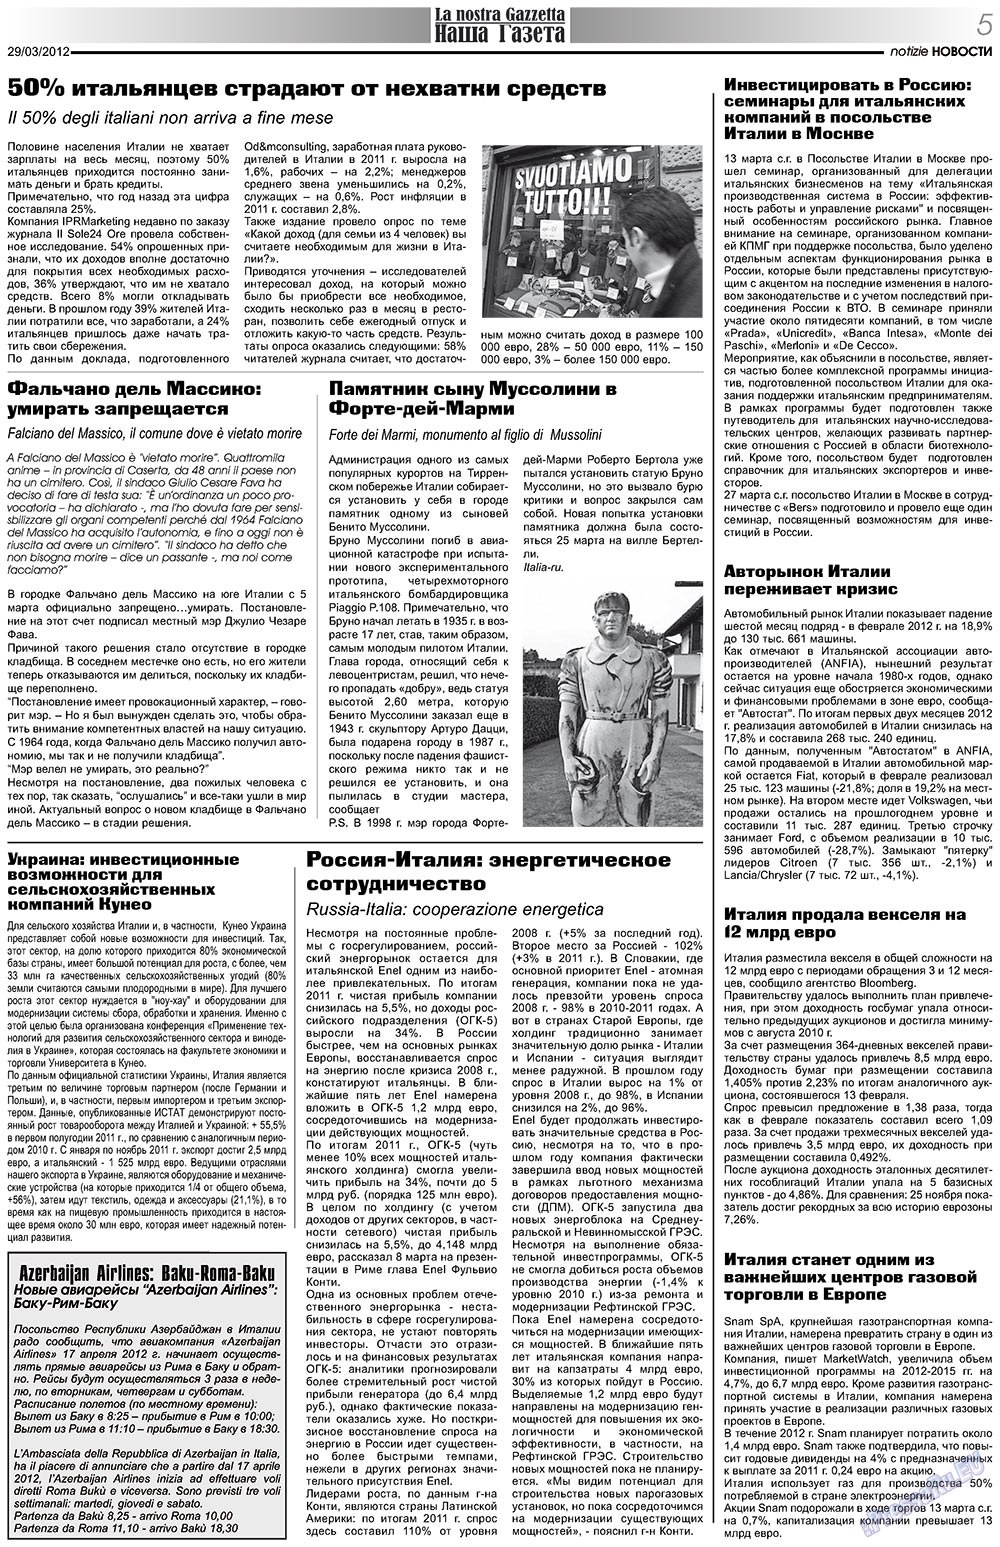 Наша Газета Италия, газета. 2012 №153 стр.5